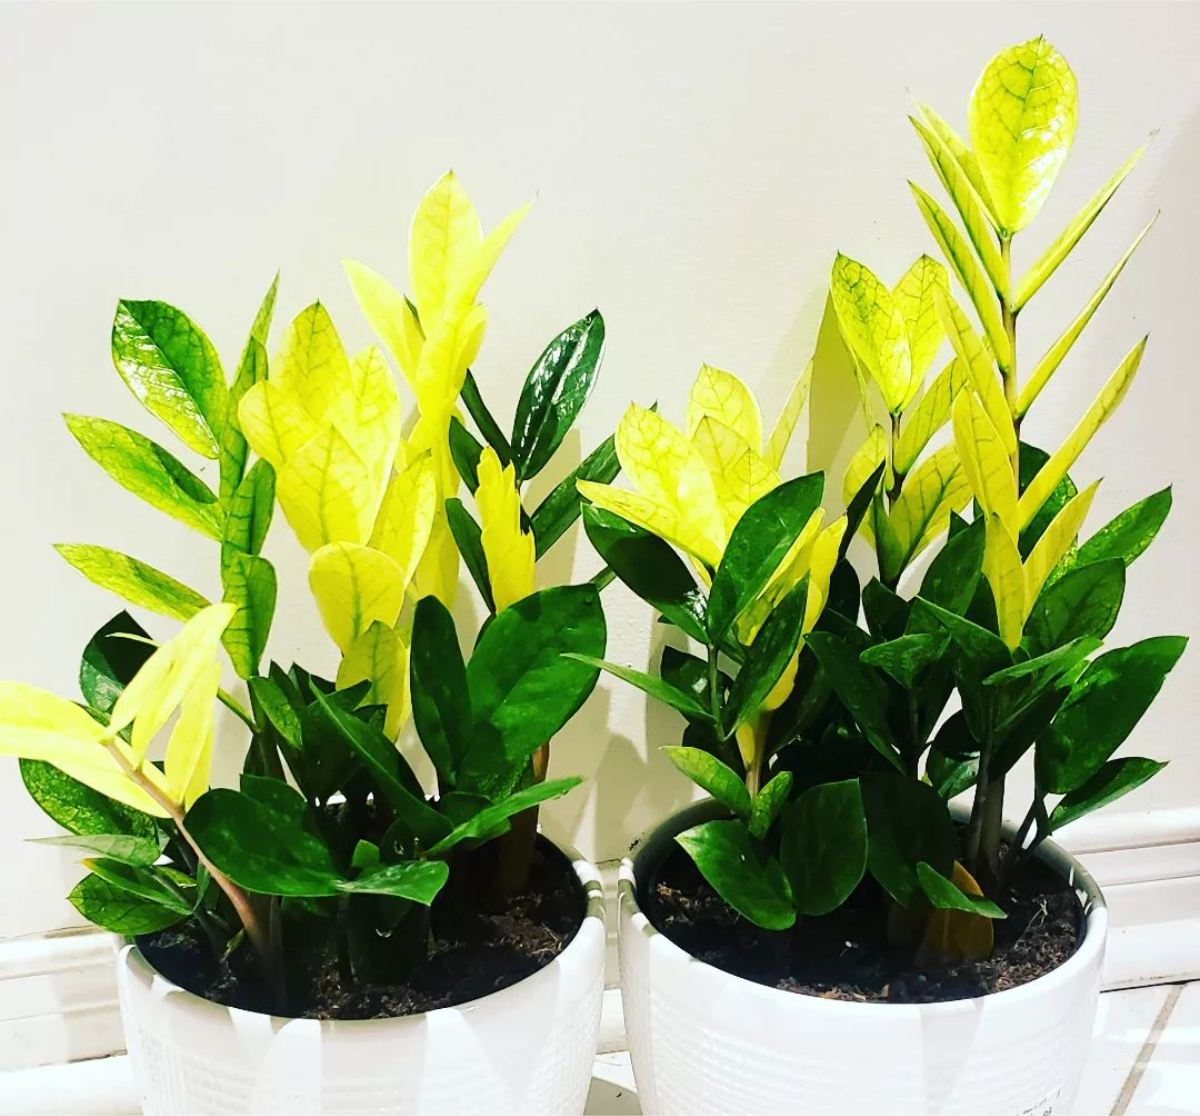 zwei zamioculcas pflanzen mit gelben blättern